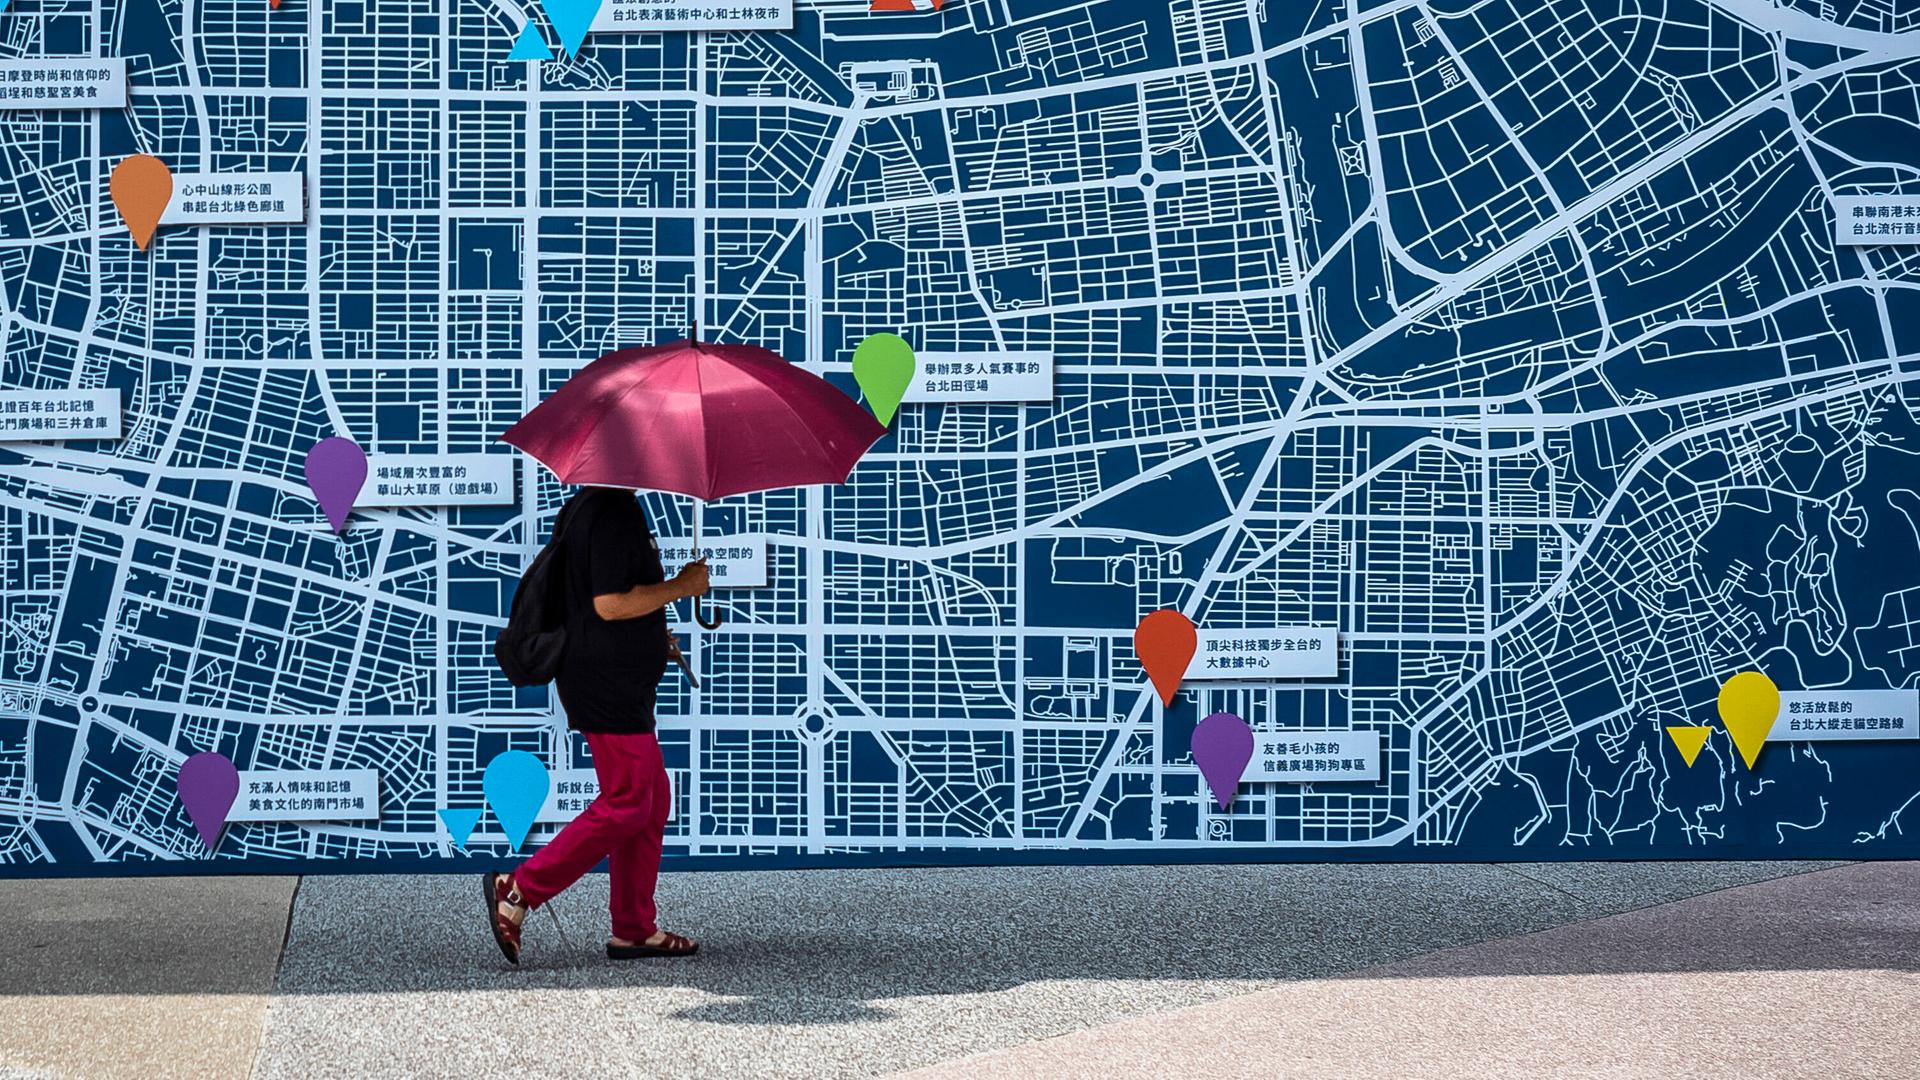 Eine Person geht mit einem roten Schirm an einer Karte von Taipei vorbei.